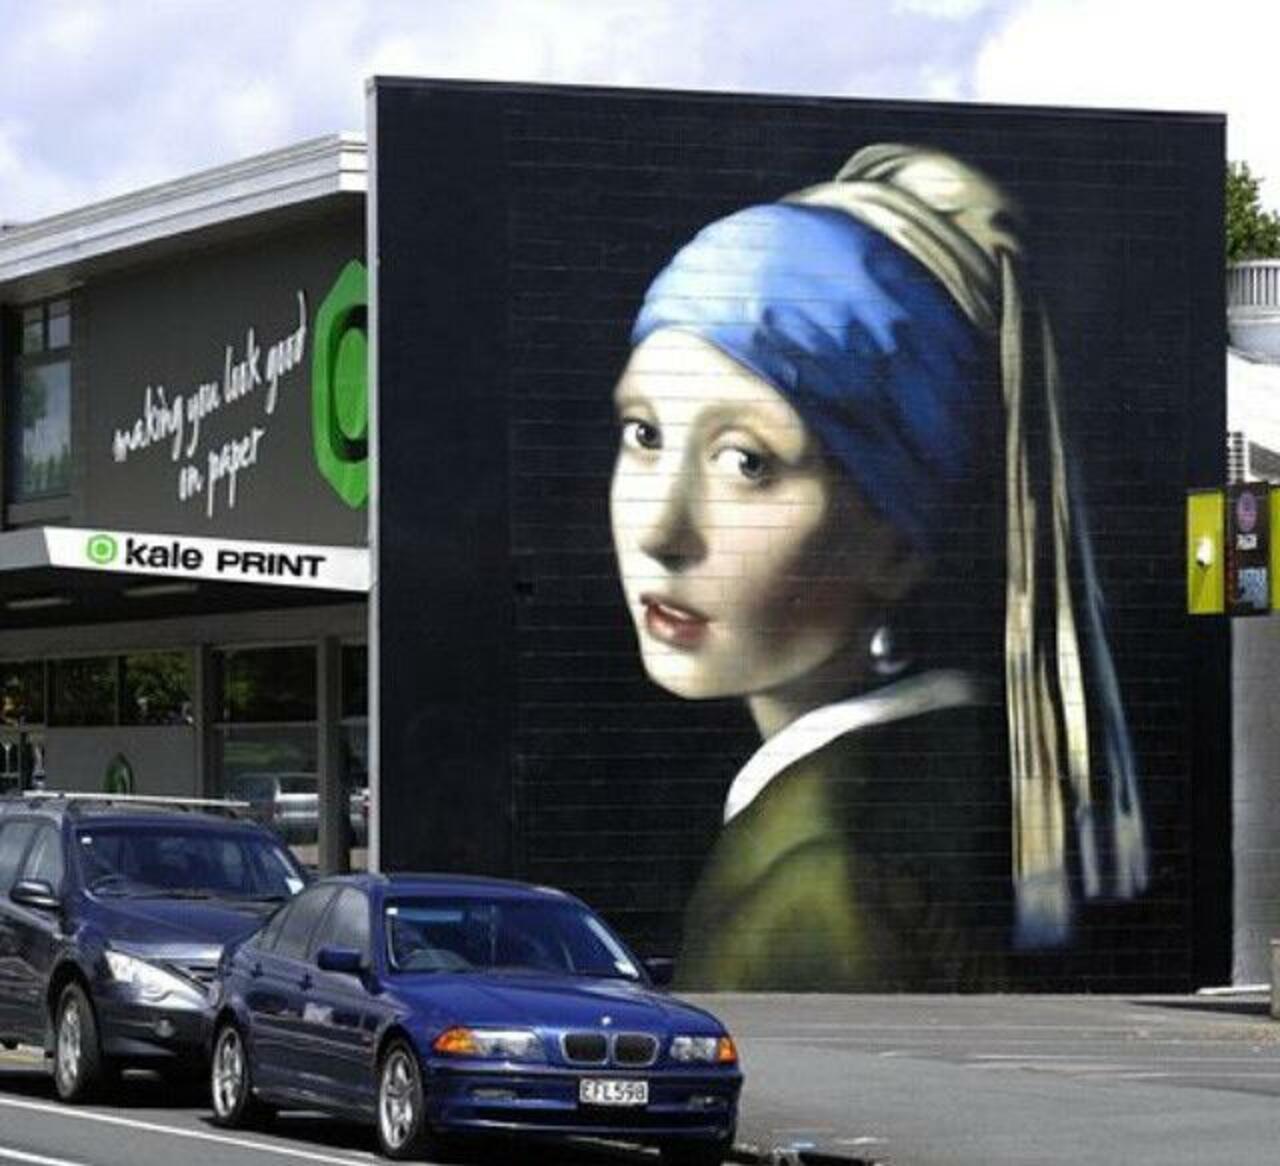 The Girl with the Pearl Earring Street Art by Owen Dippie in New Zealand 

#art #arte #graffiti #streetart http://t.co/bD24JX9ifa googles…